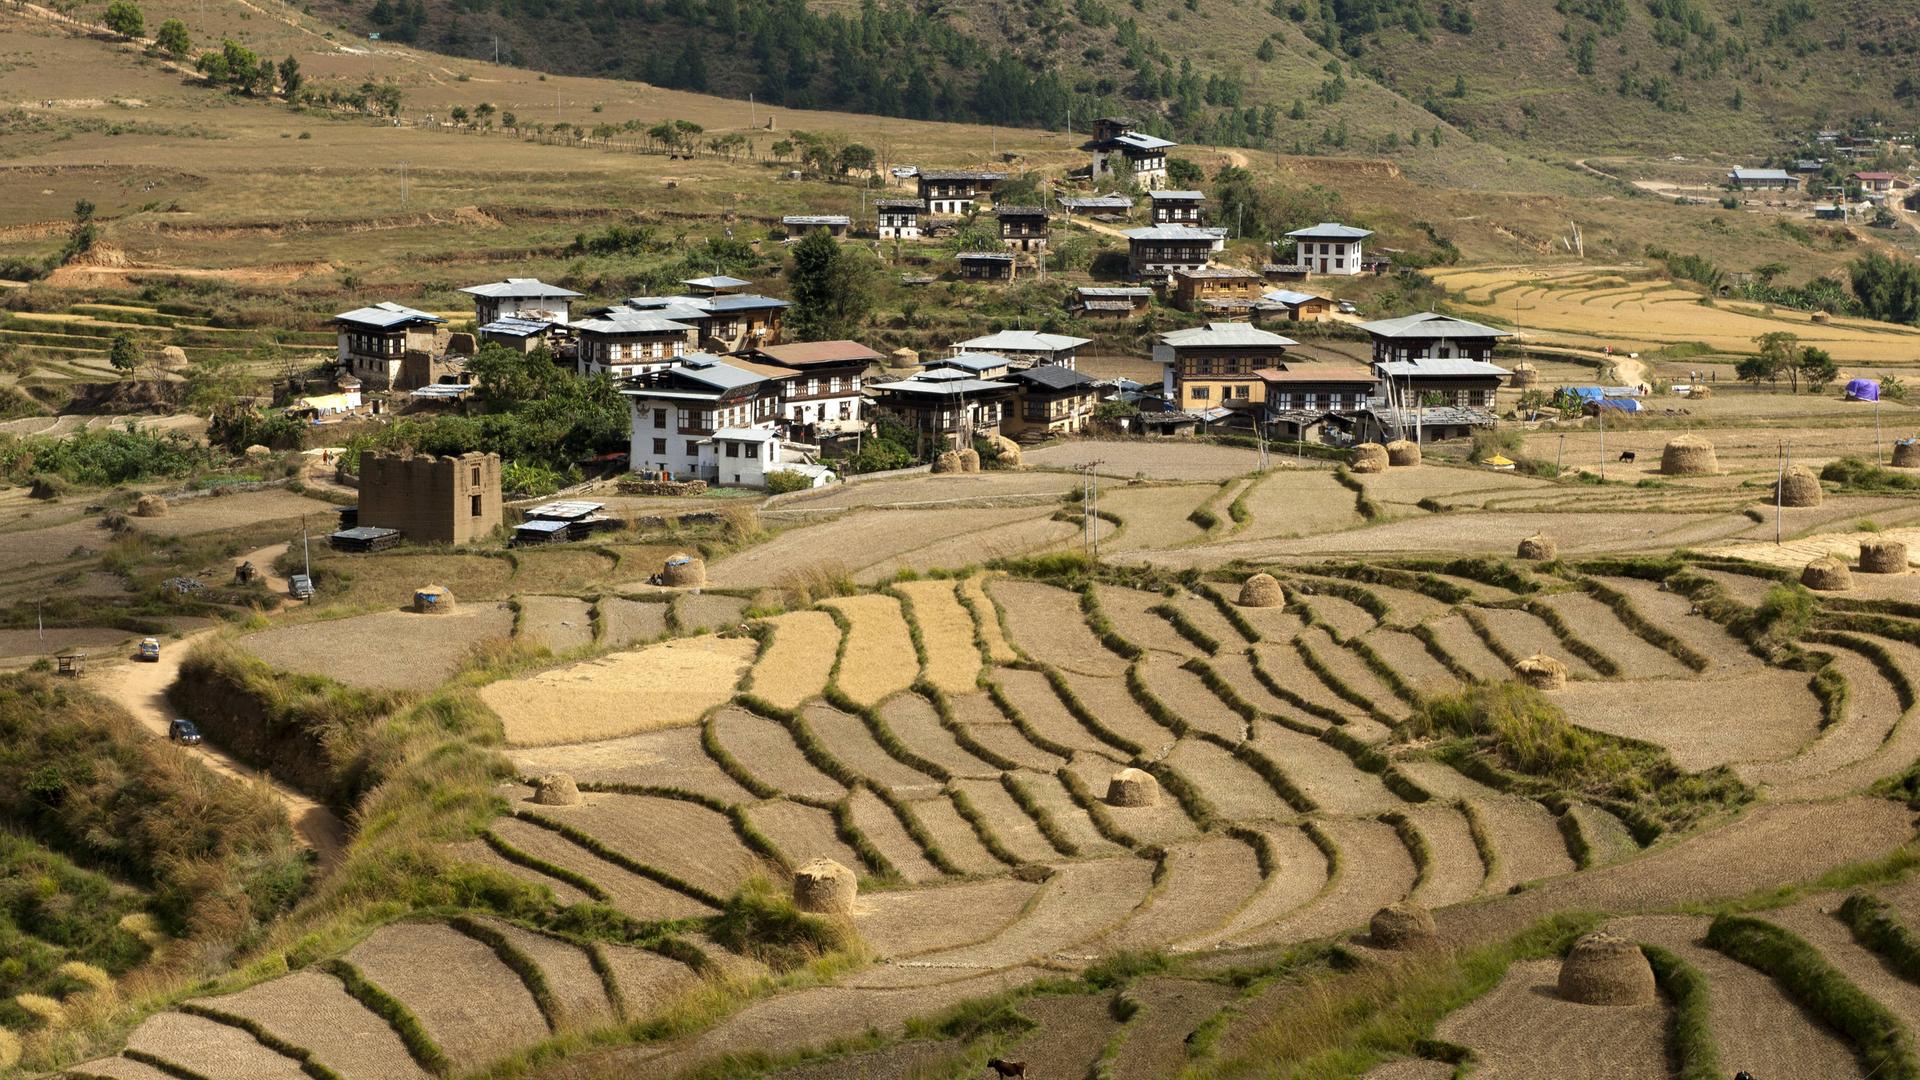 Blick auf das Dorf Sopsokha in Butan inmitten von Terrassenfeldern für den Reisanbau.